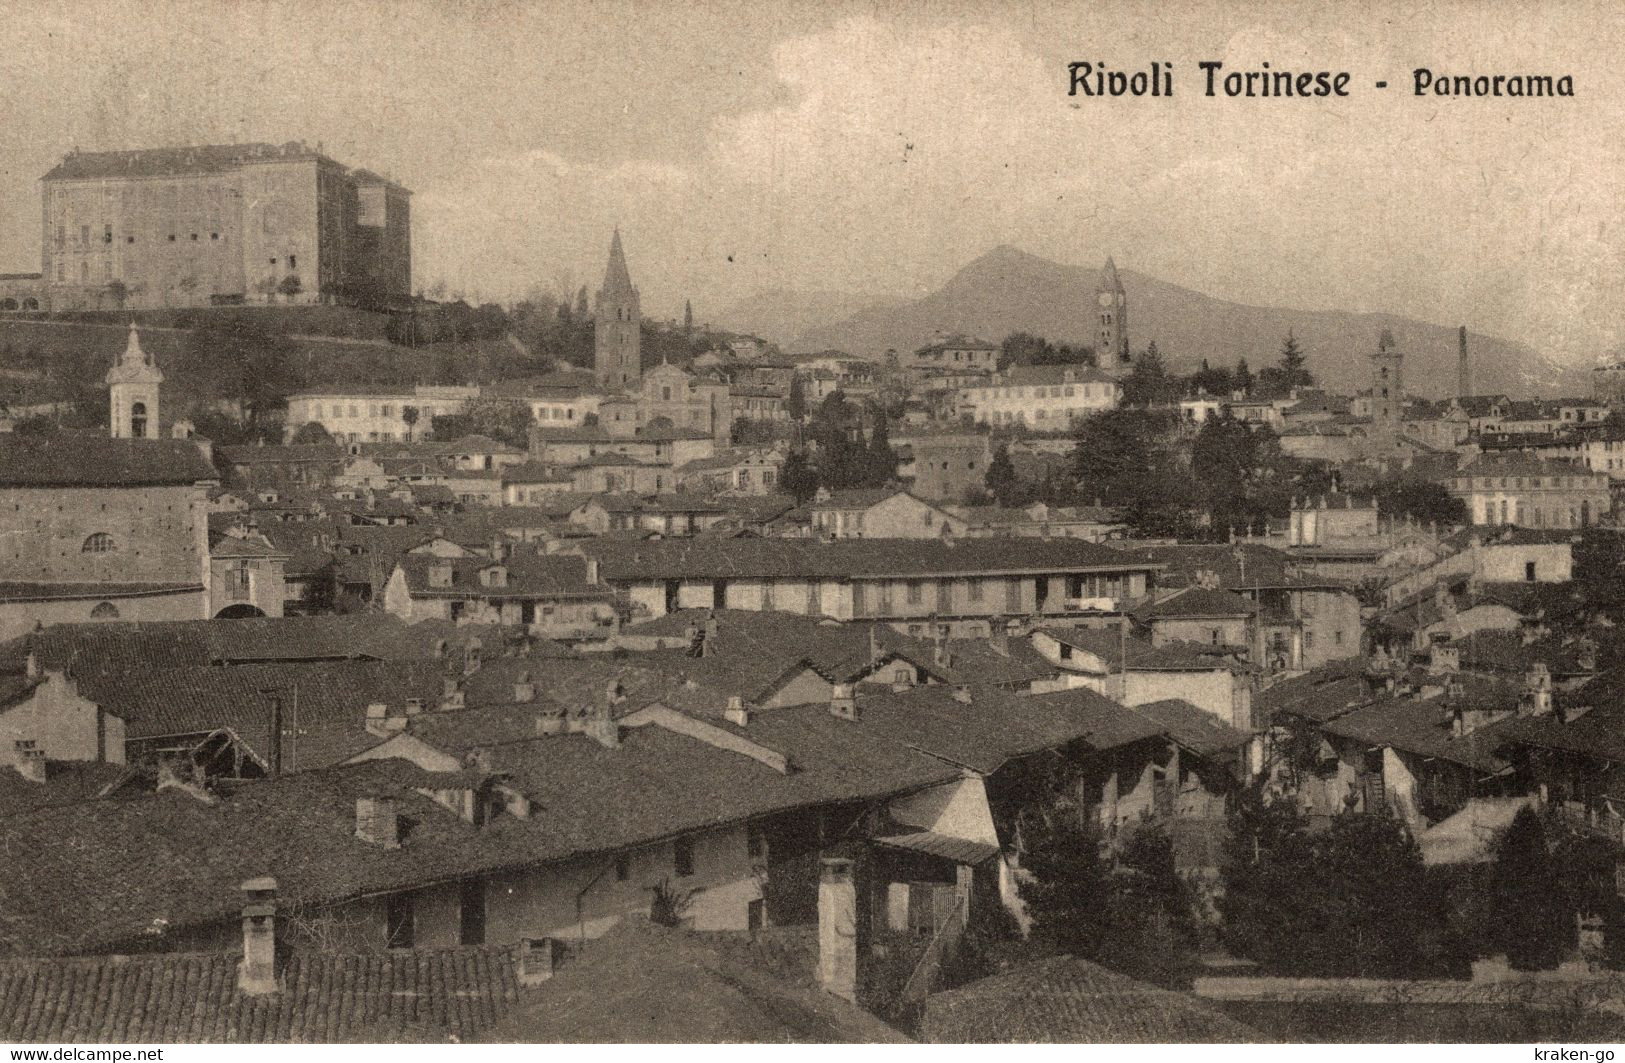 RIVOLI, Torino - Panorama - VG - #024 - Rivoli